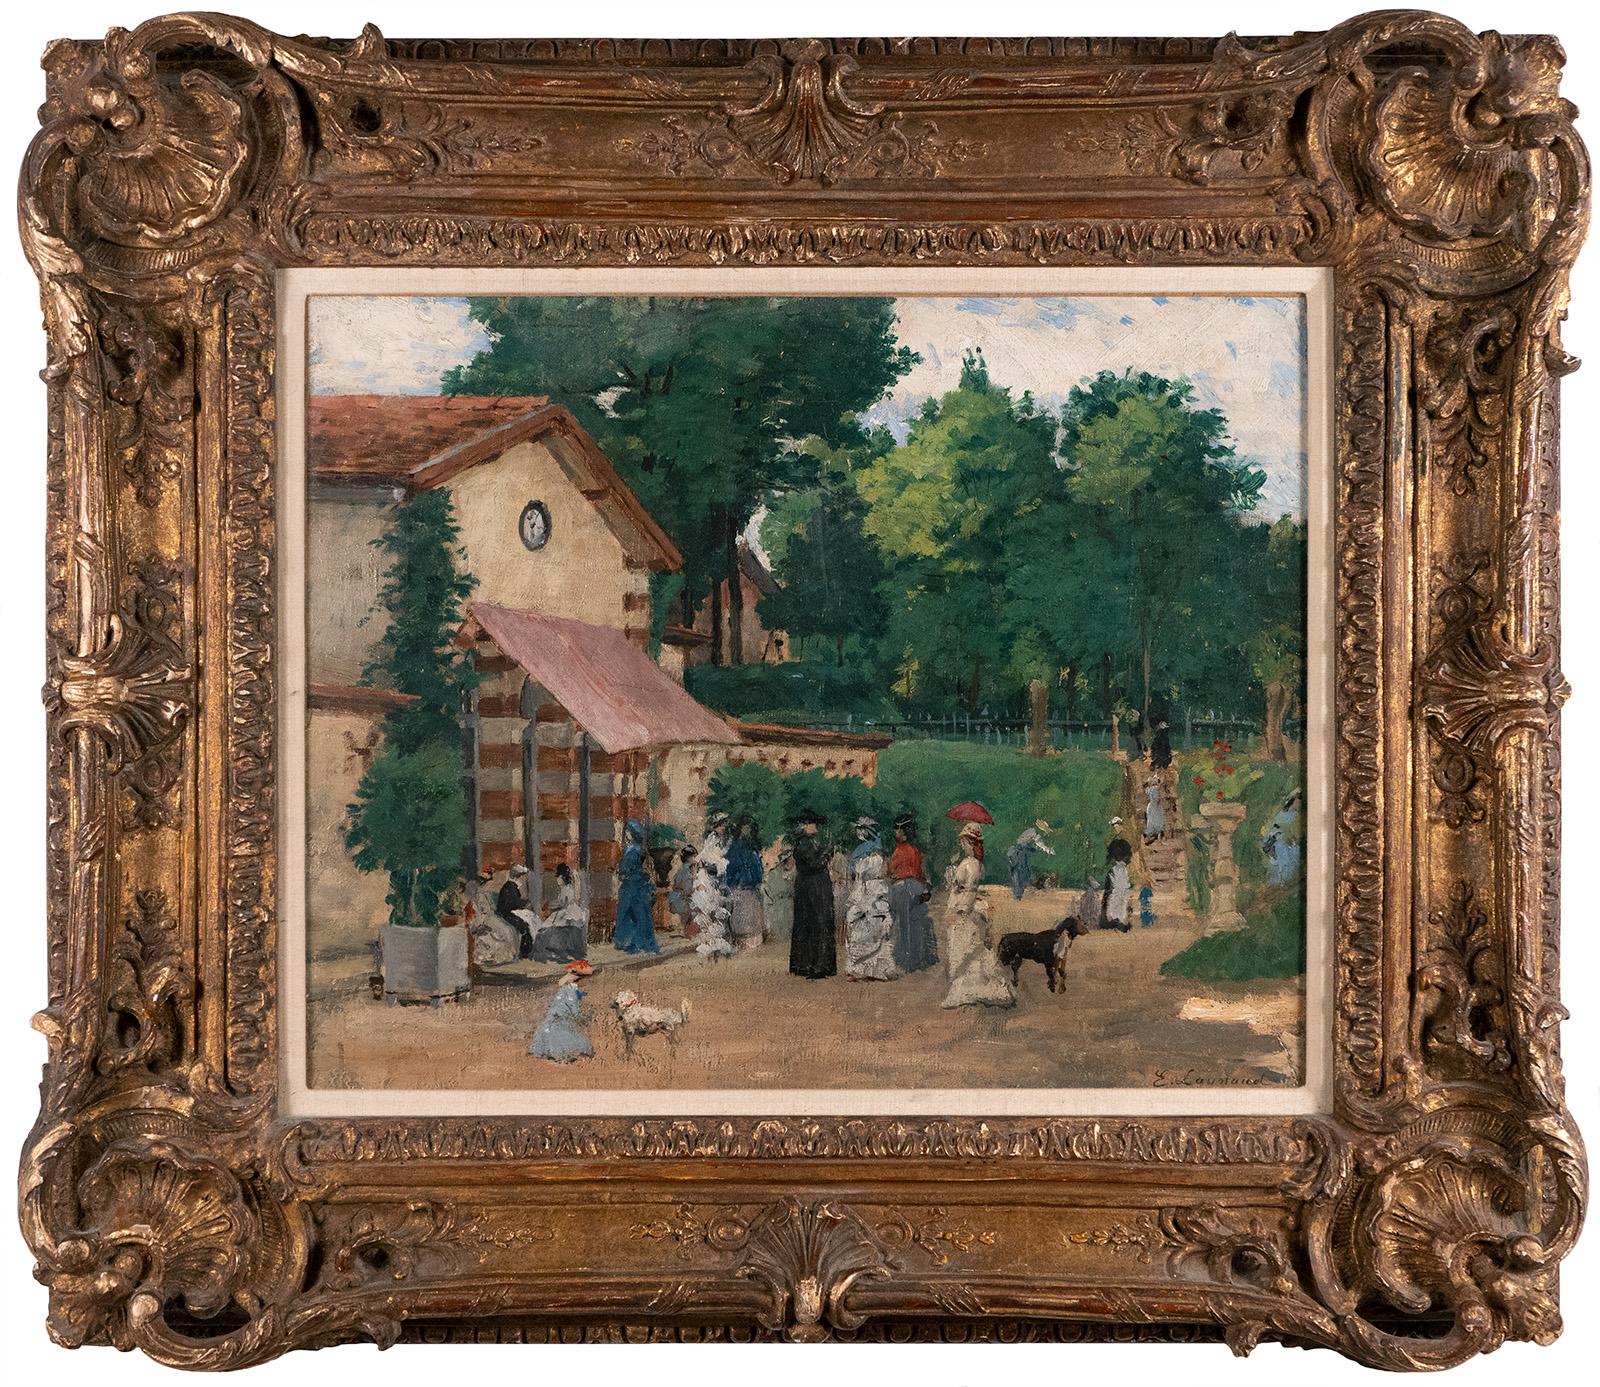 Ernest Laynaud (français, 1841 - 1928)

Signé en bas à droite

13 x 16 pouces

Huile sur toile